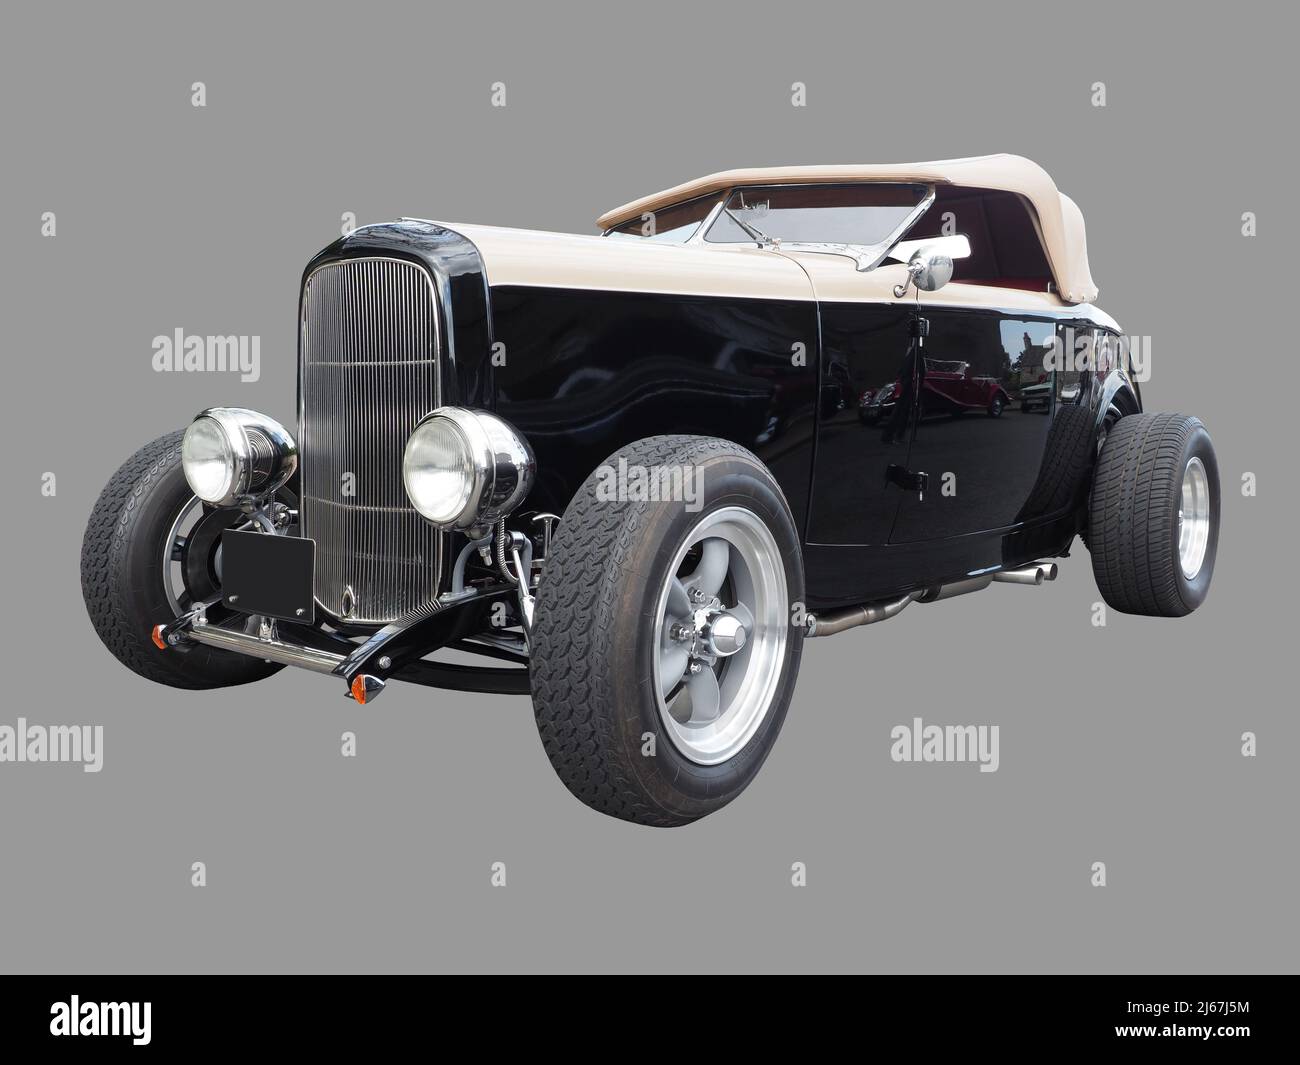 Une voiture cabriolet Hi-Boy Hot Rod, Ford modèle B 1932, 3 glaces, coupé Deuce, roadster. Noir brillant, brun clair, isolé sur gris, pas de logos, Banque D'Images